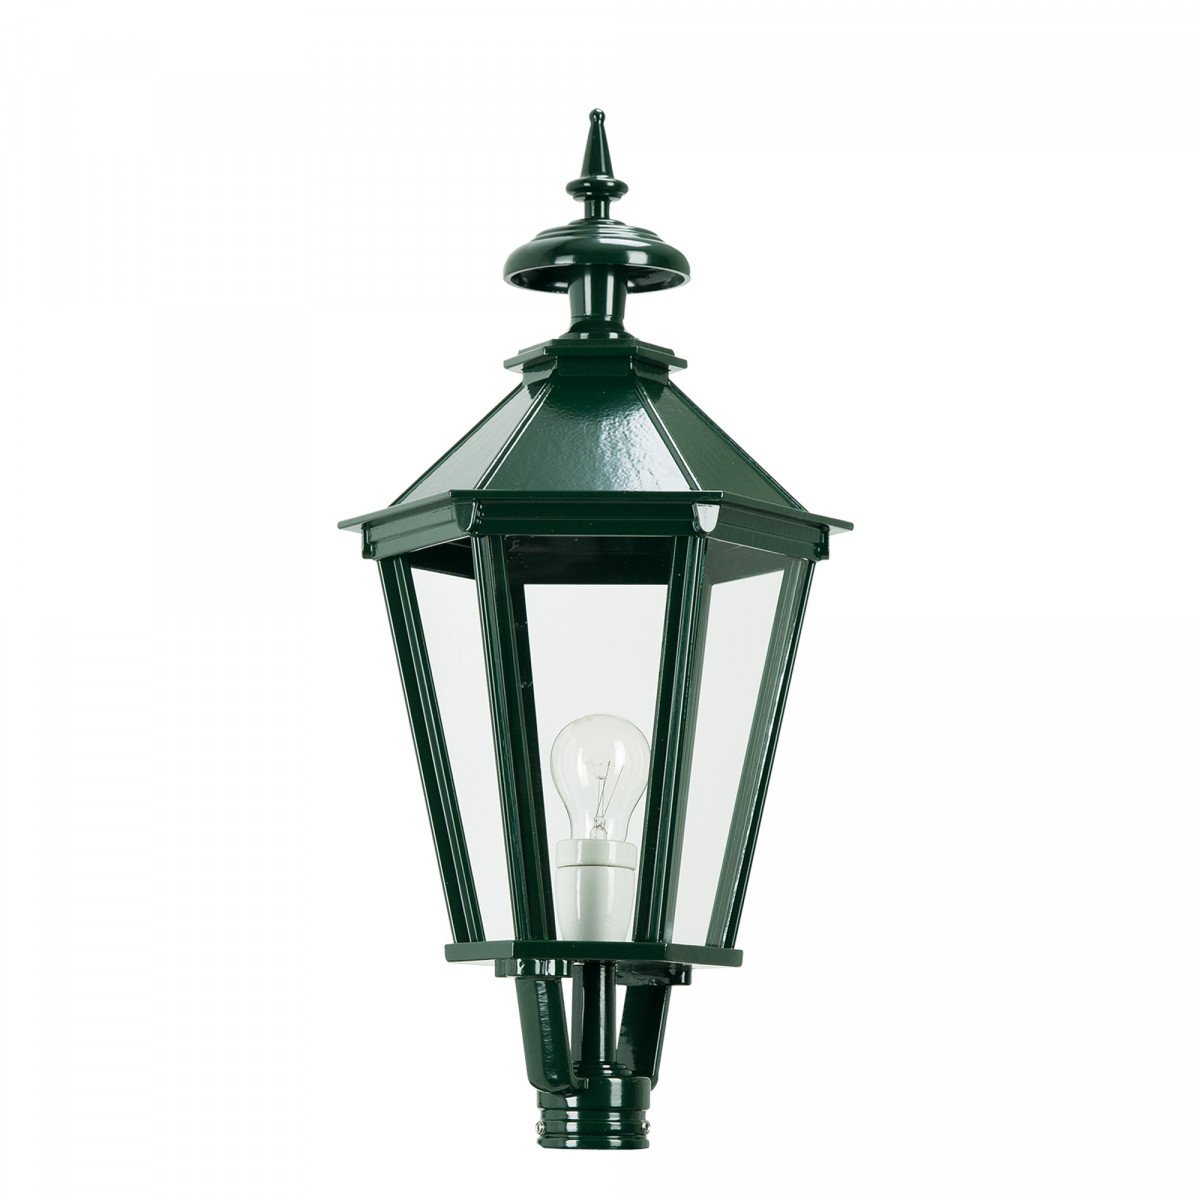 Lanterne K7A hexagonale (1505) éclairage d'extérieur  de KS Lighting - Abat-jour, poteaux, supports